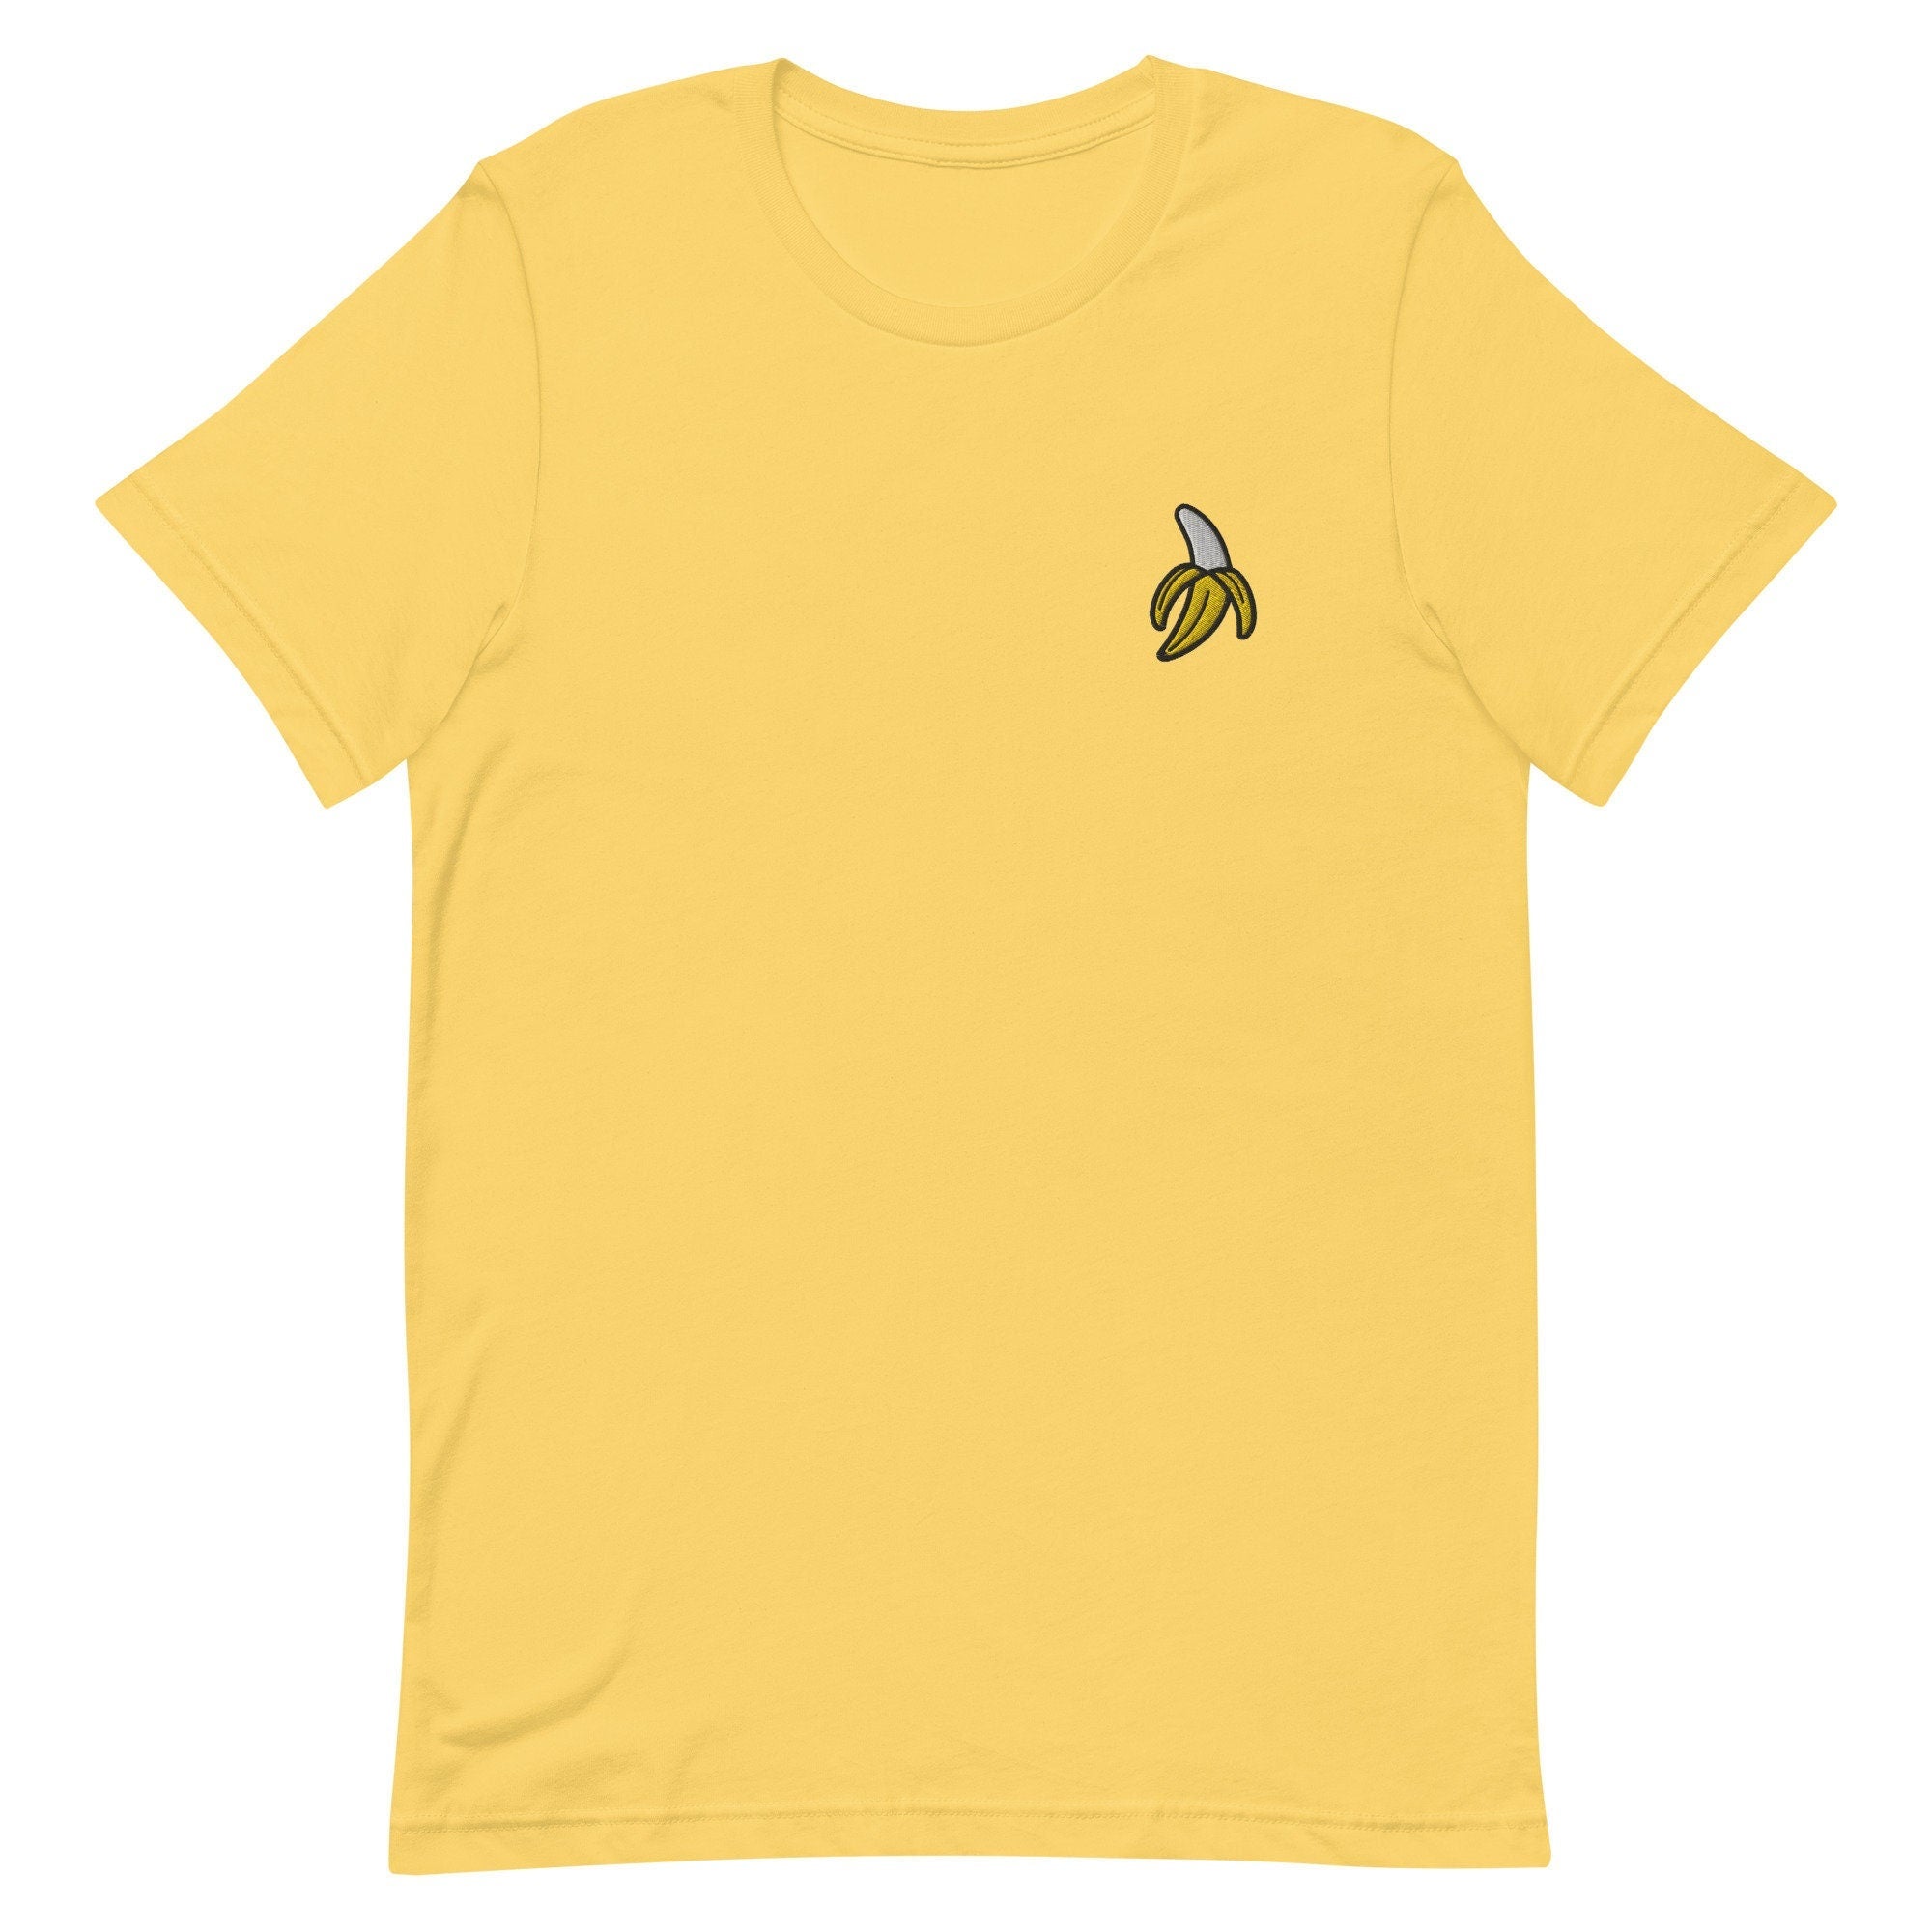 Banana Premium Men's T-Shirt, Embroidered Men's T-Shirt Gift for Boyfriend, Men's Short Sleeve Shirt - Multiple Colors